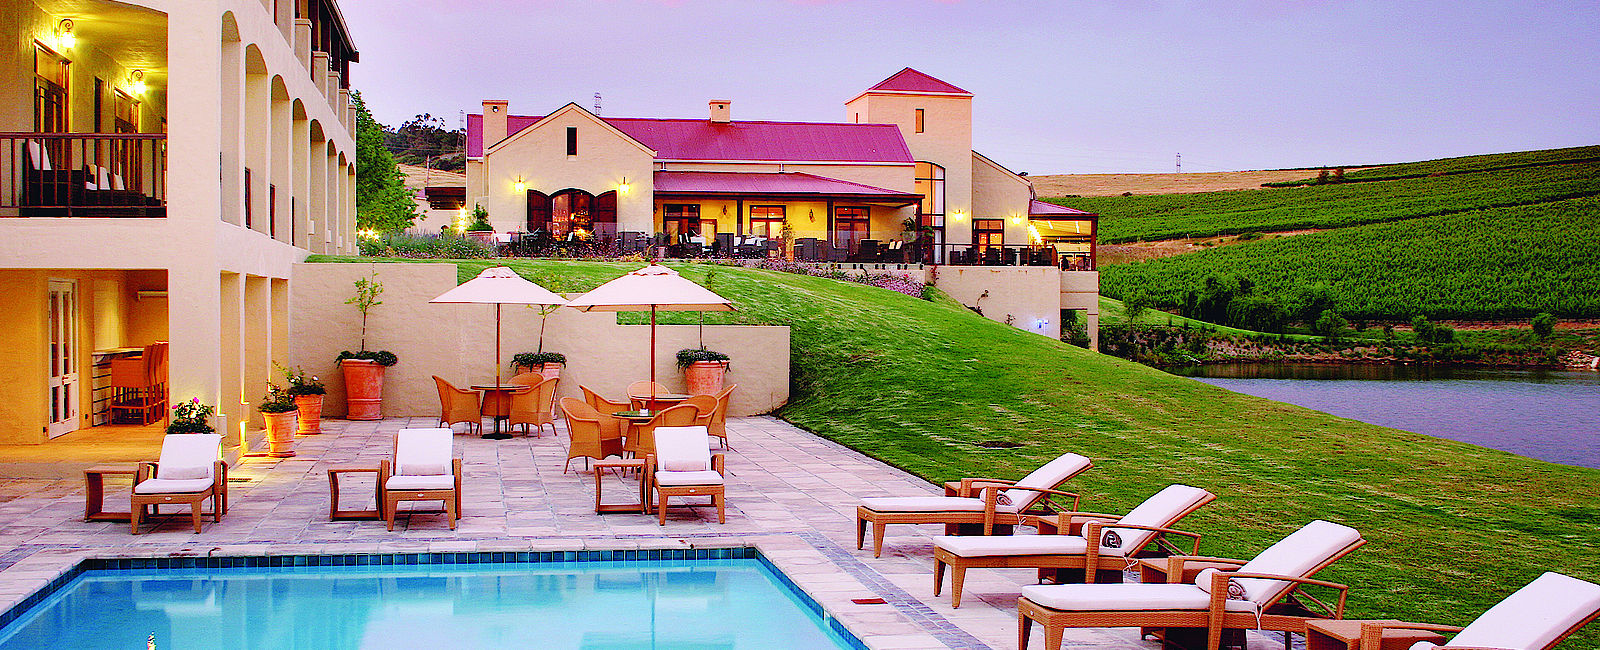 HOTEL TIPPS
 Asara Wine Estate & Hotel 
 Luxushotel für Weinliebhaber 